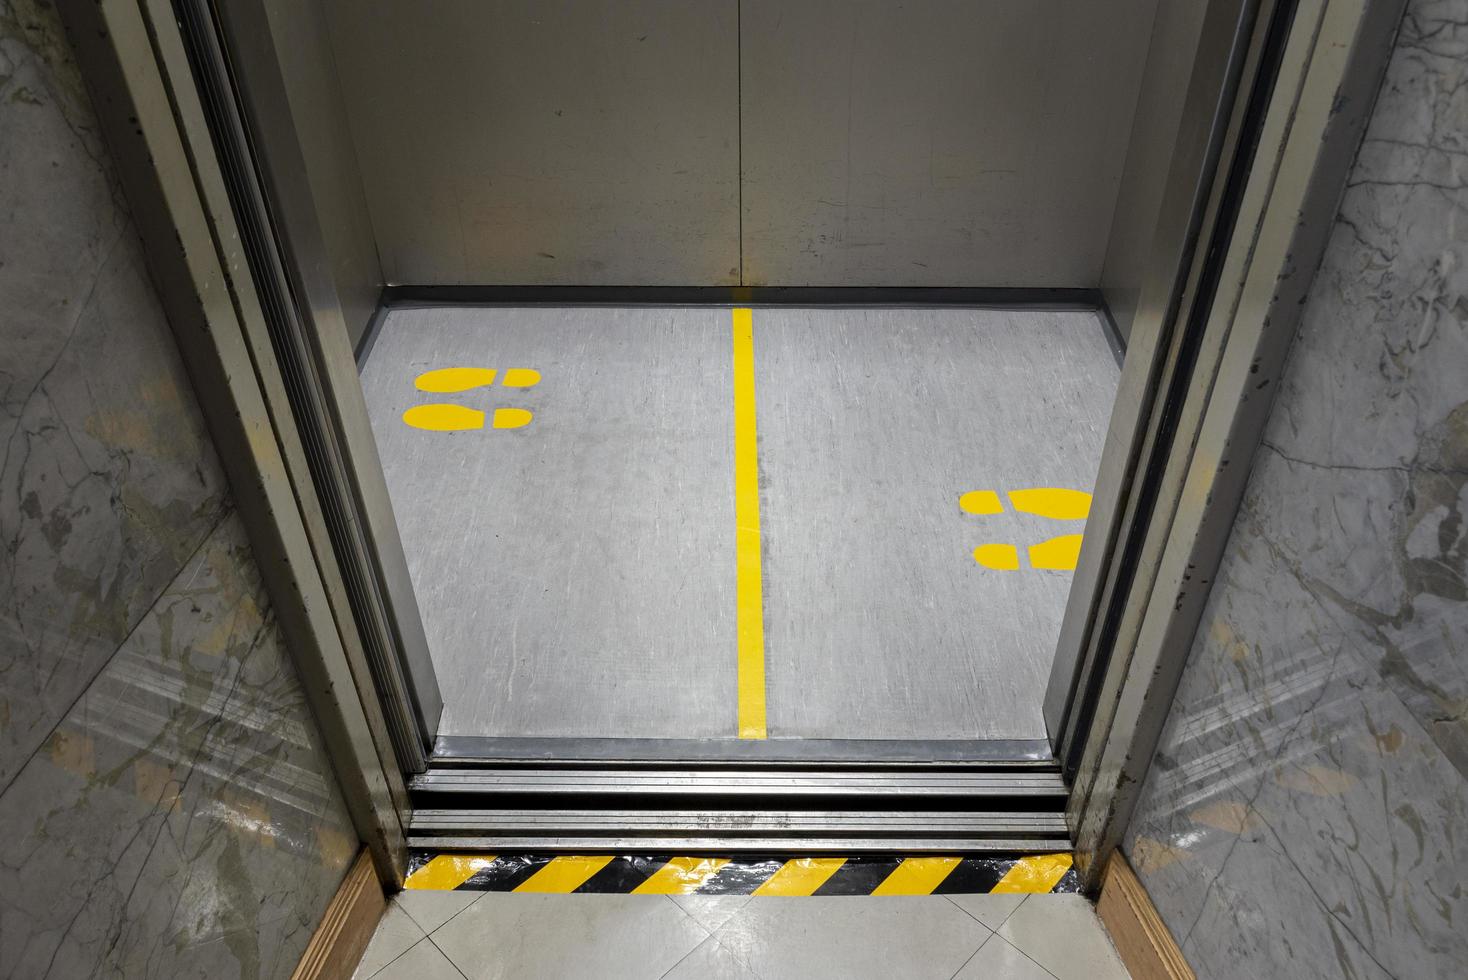 distanciamiento social para covid-19 con señal de huella amarilla en ascensor público foto